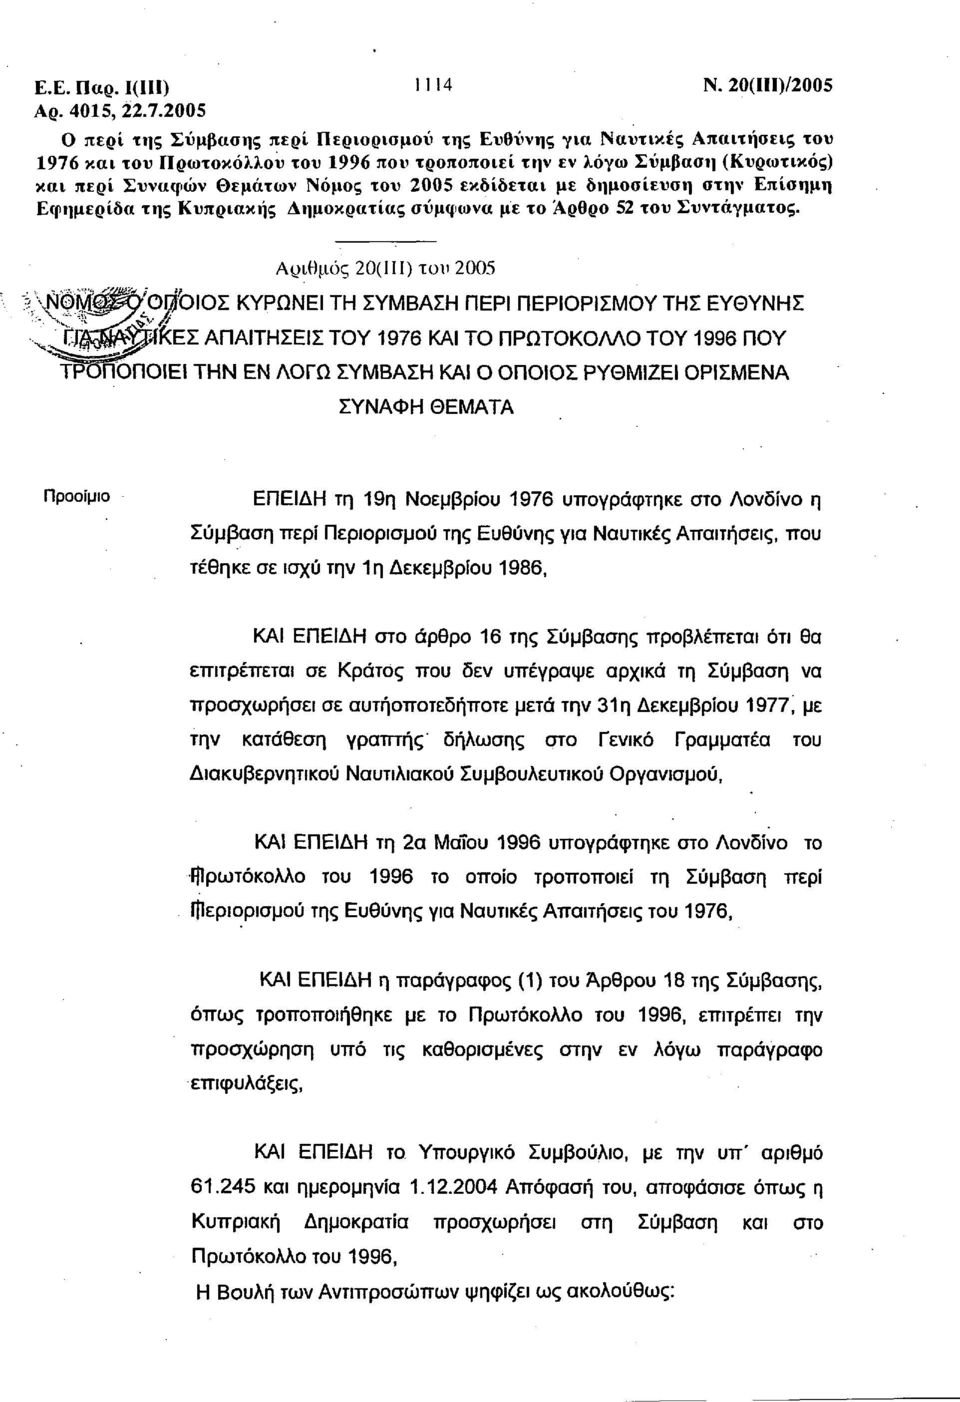 2005 εκδίδεται με δημοσίευση στην Επίσημη Εφημερίδα της Κυπριακής Δημοκρατίας σύμφωνα με το Αρθρο 52 του Συντάγματος.